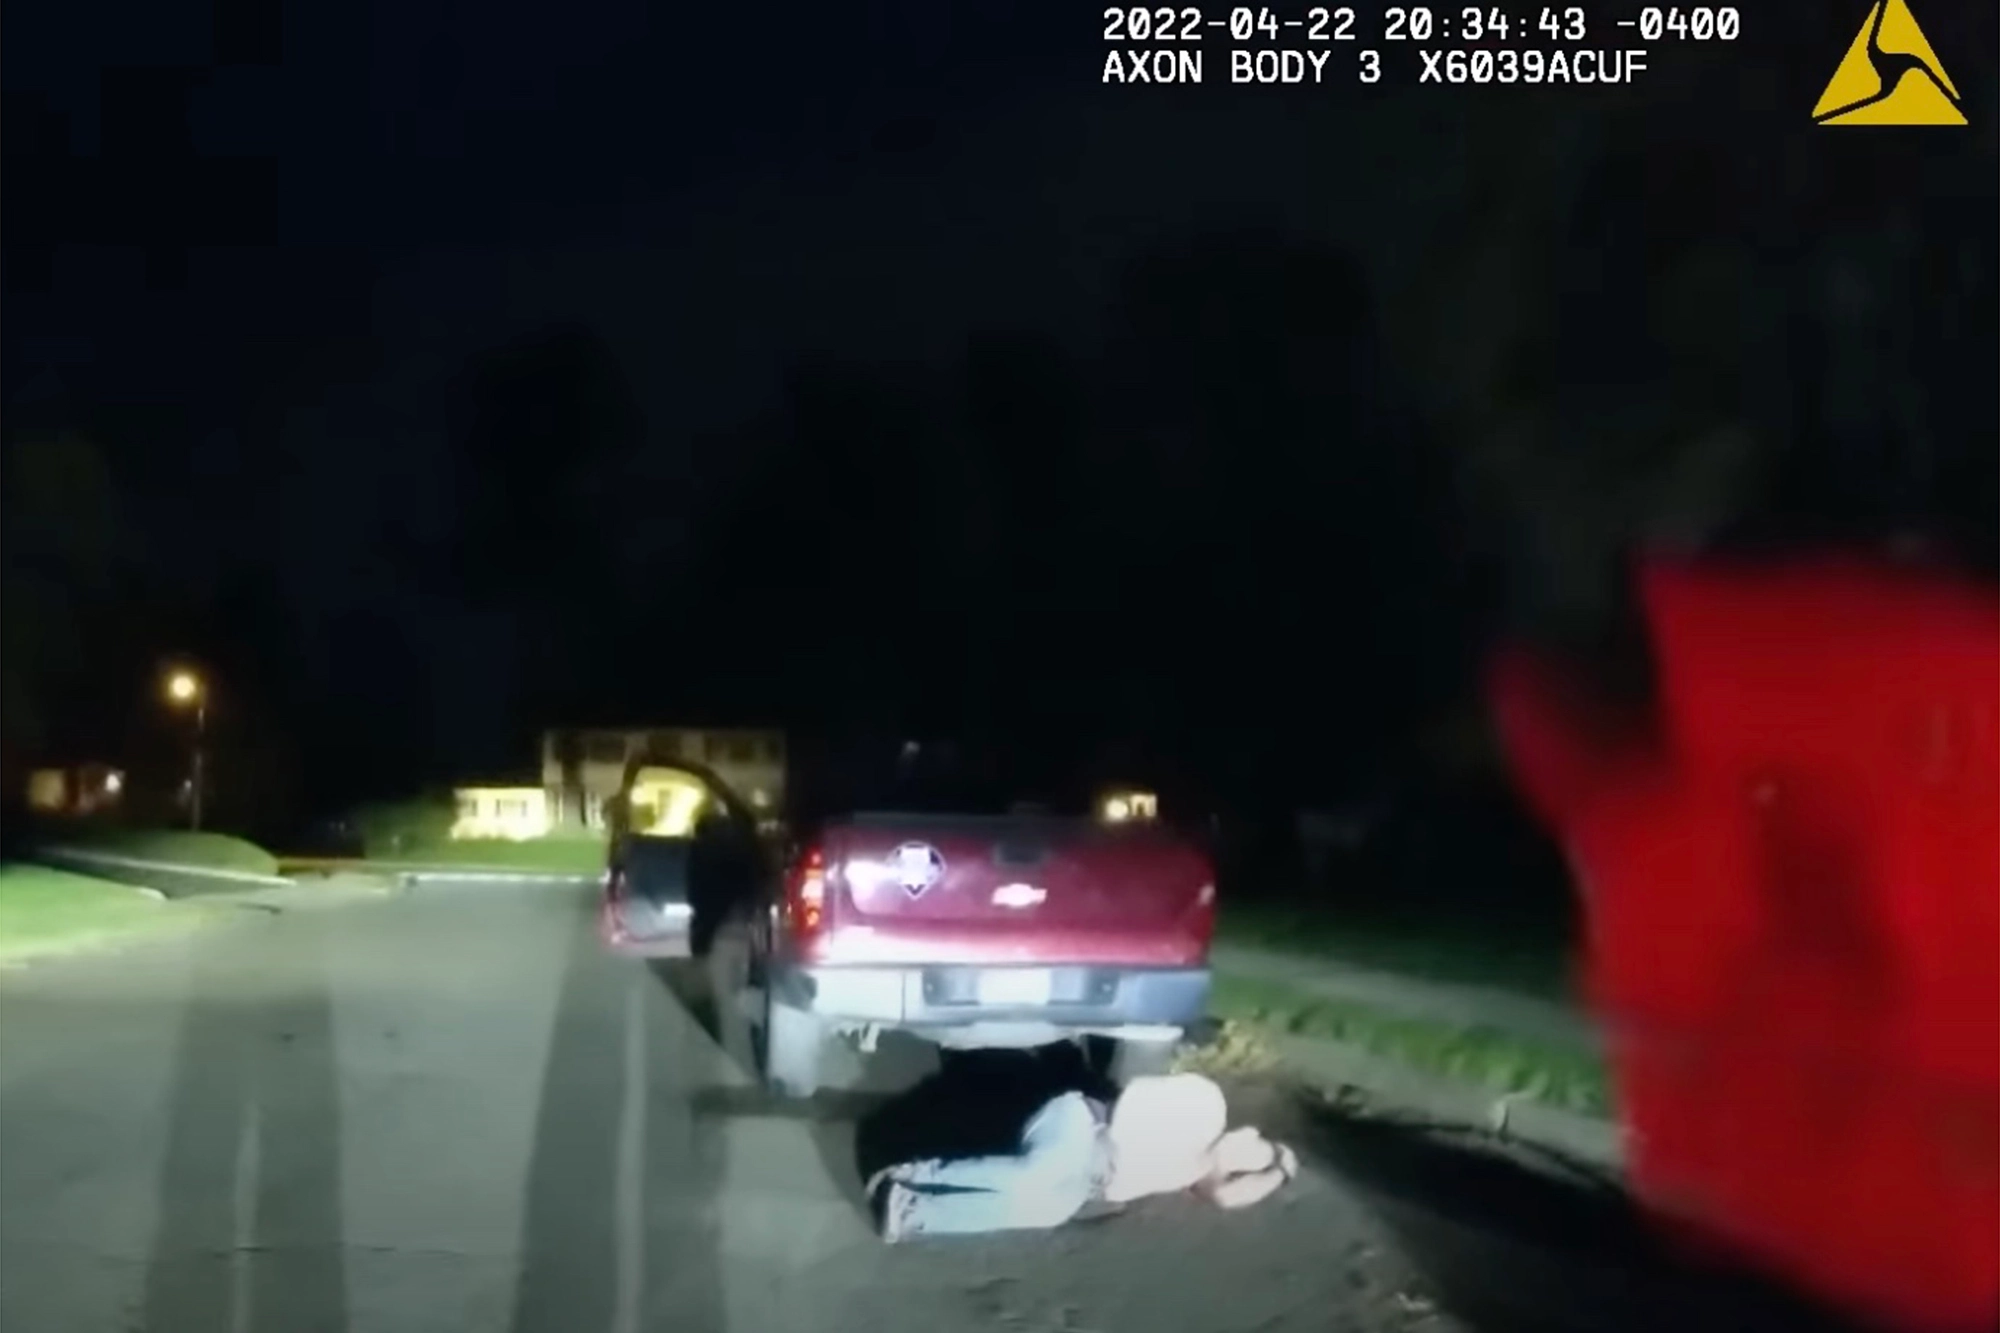 Letolt nadrággal, autója mellett a földön heverve találtak rá az amerikai kisváros rendőrfőnökére